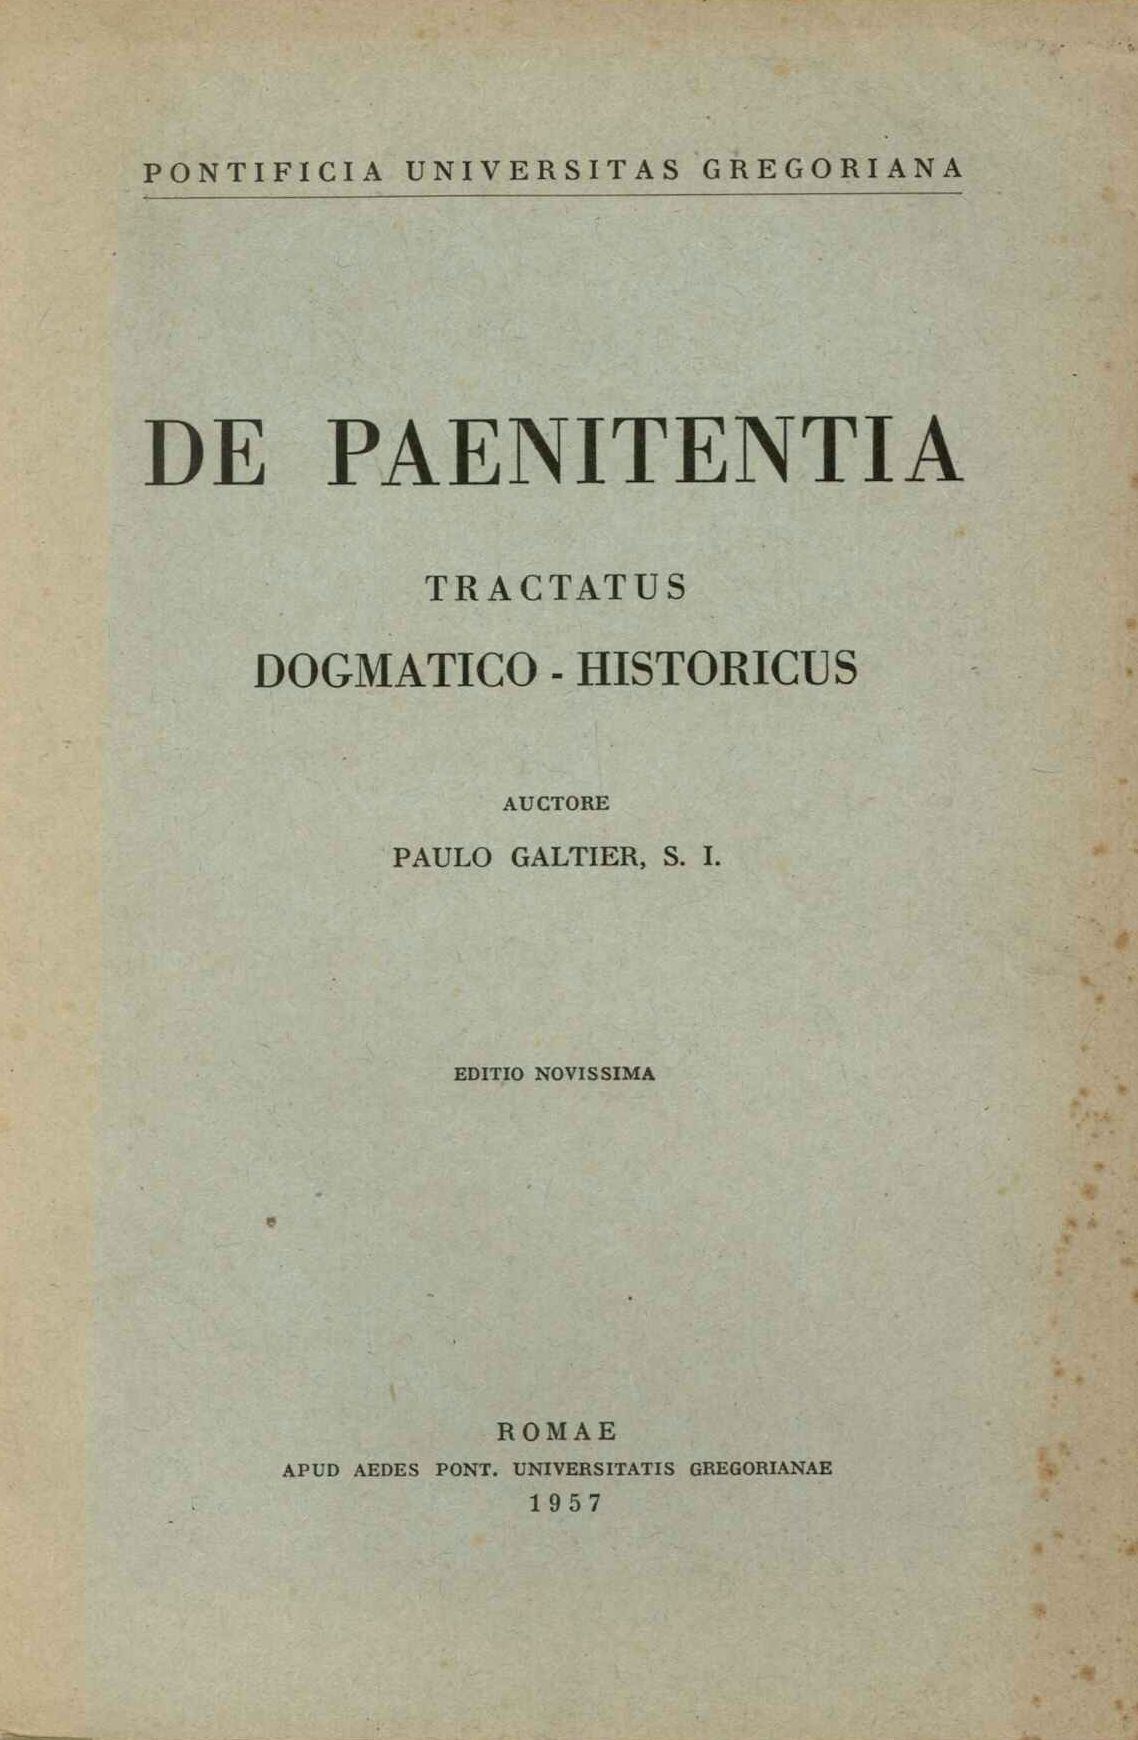 De Paenitentia Tractatus Dogmatico-Historicus